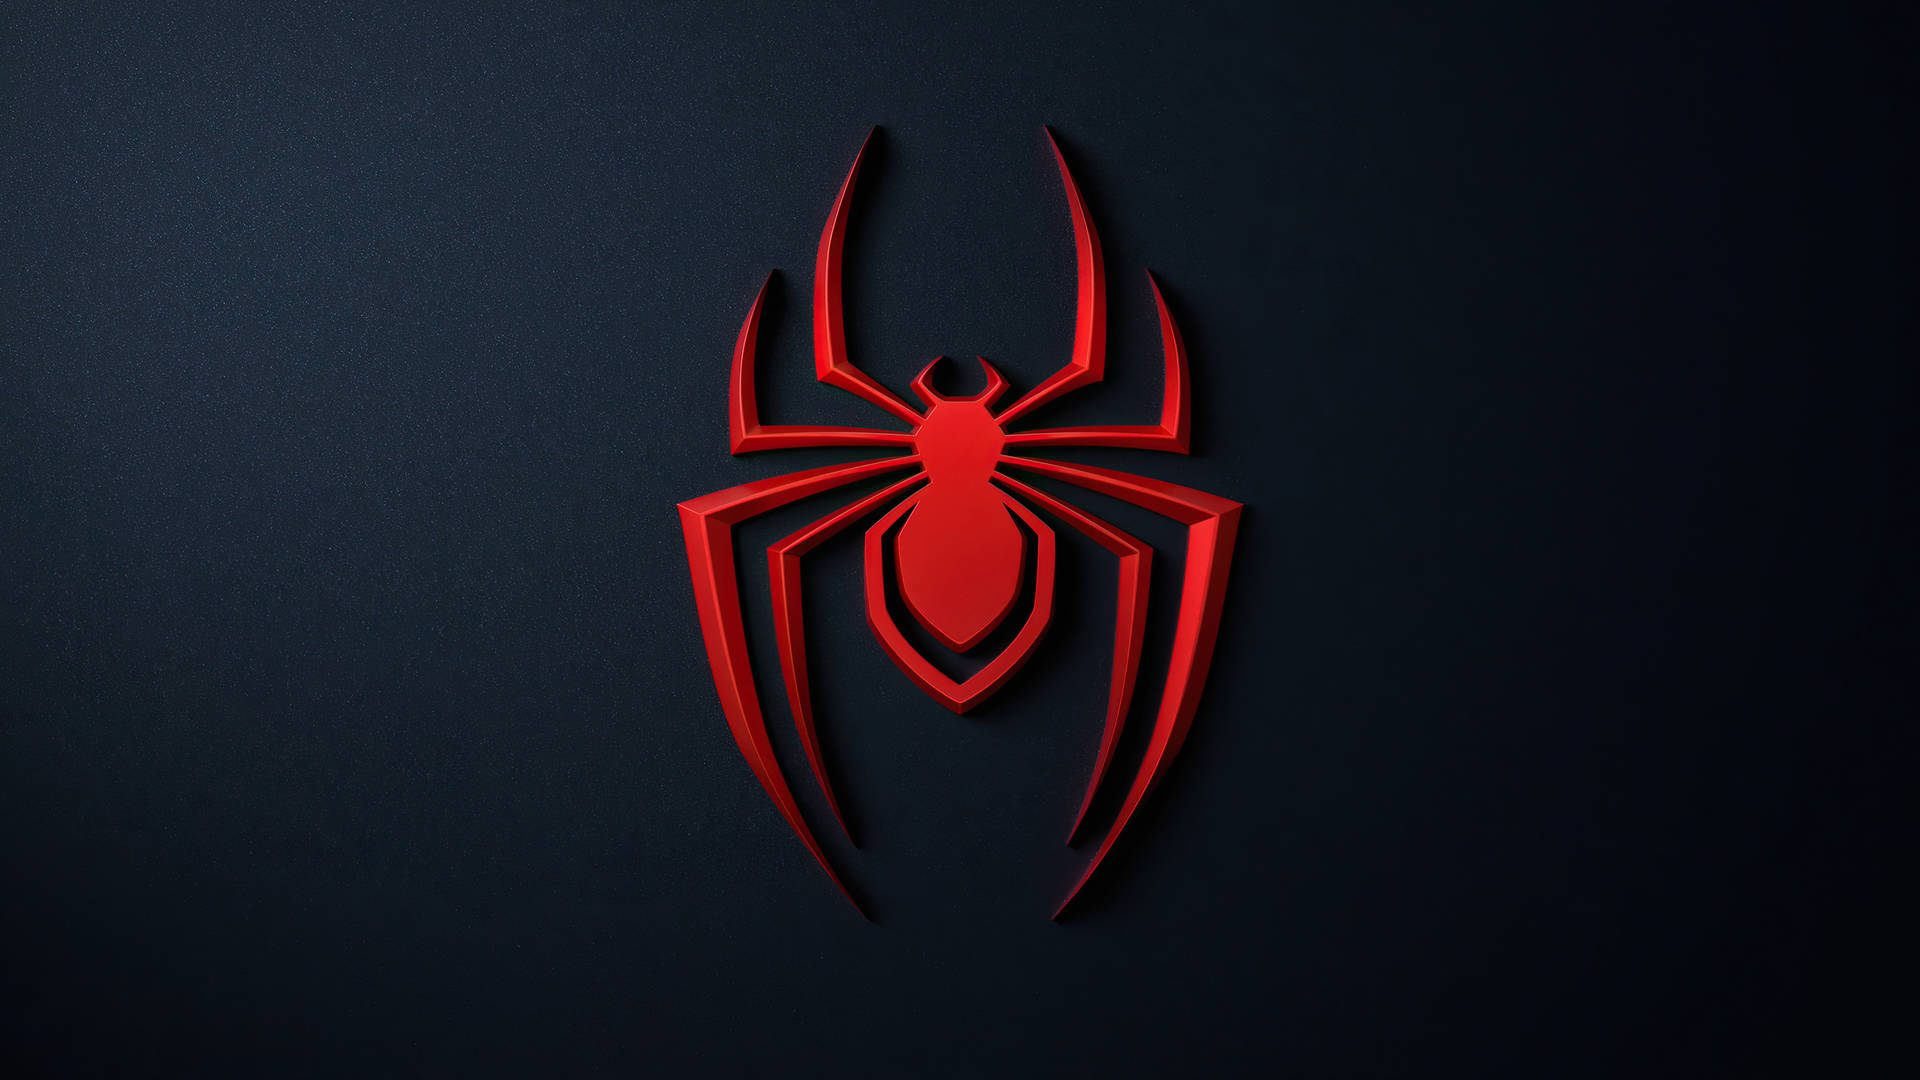 Logotipode Spider-man En Un Fondo Oscuro. Fondo de pantalla